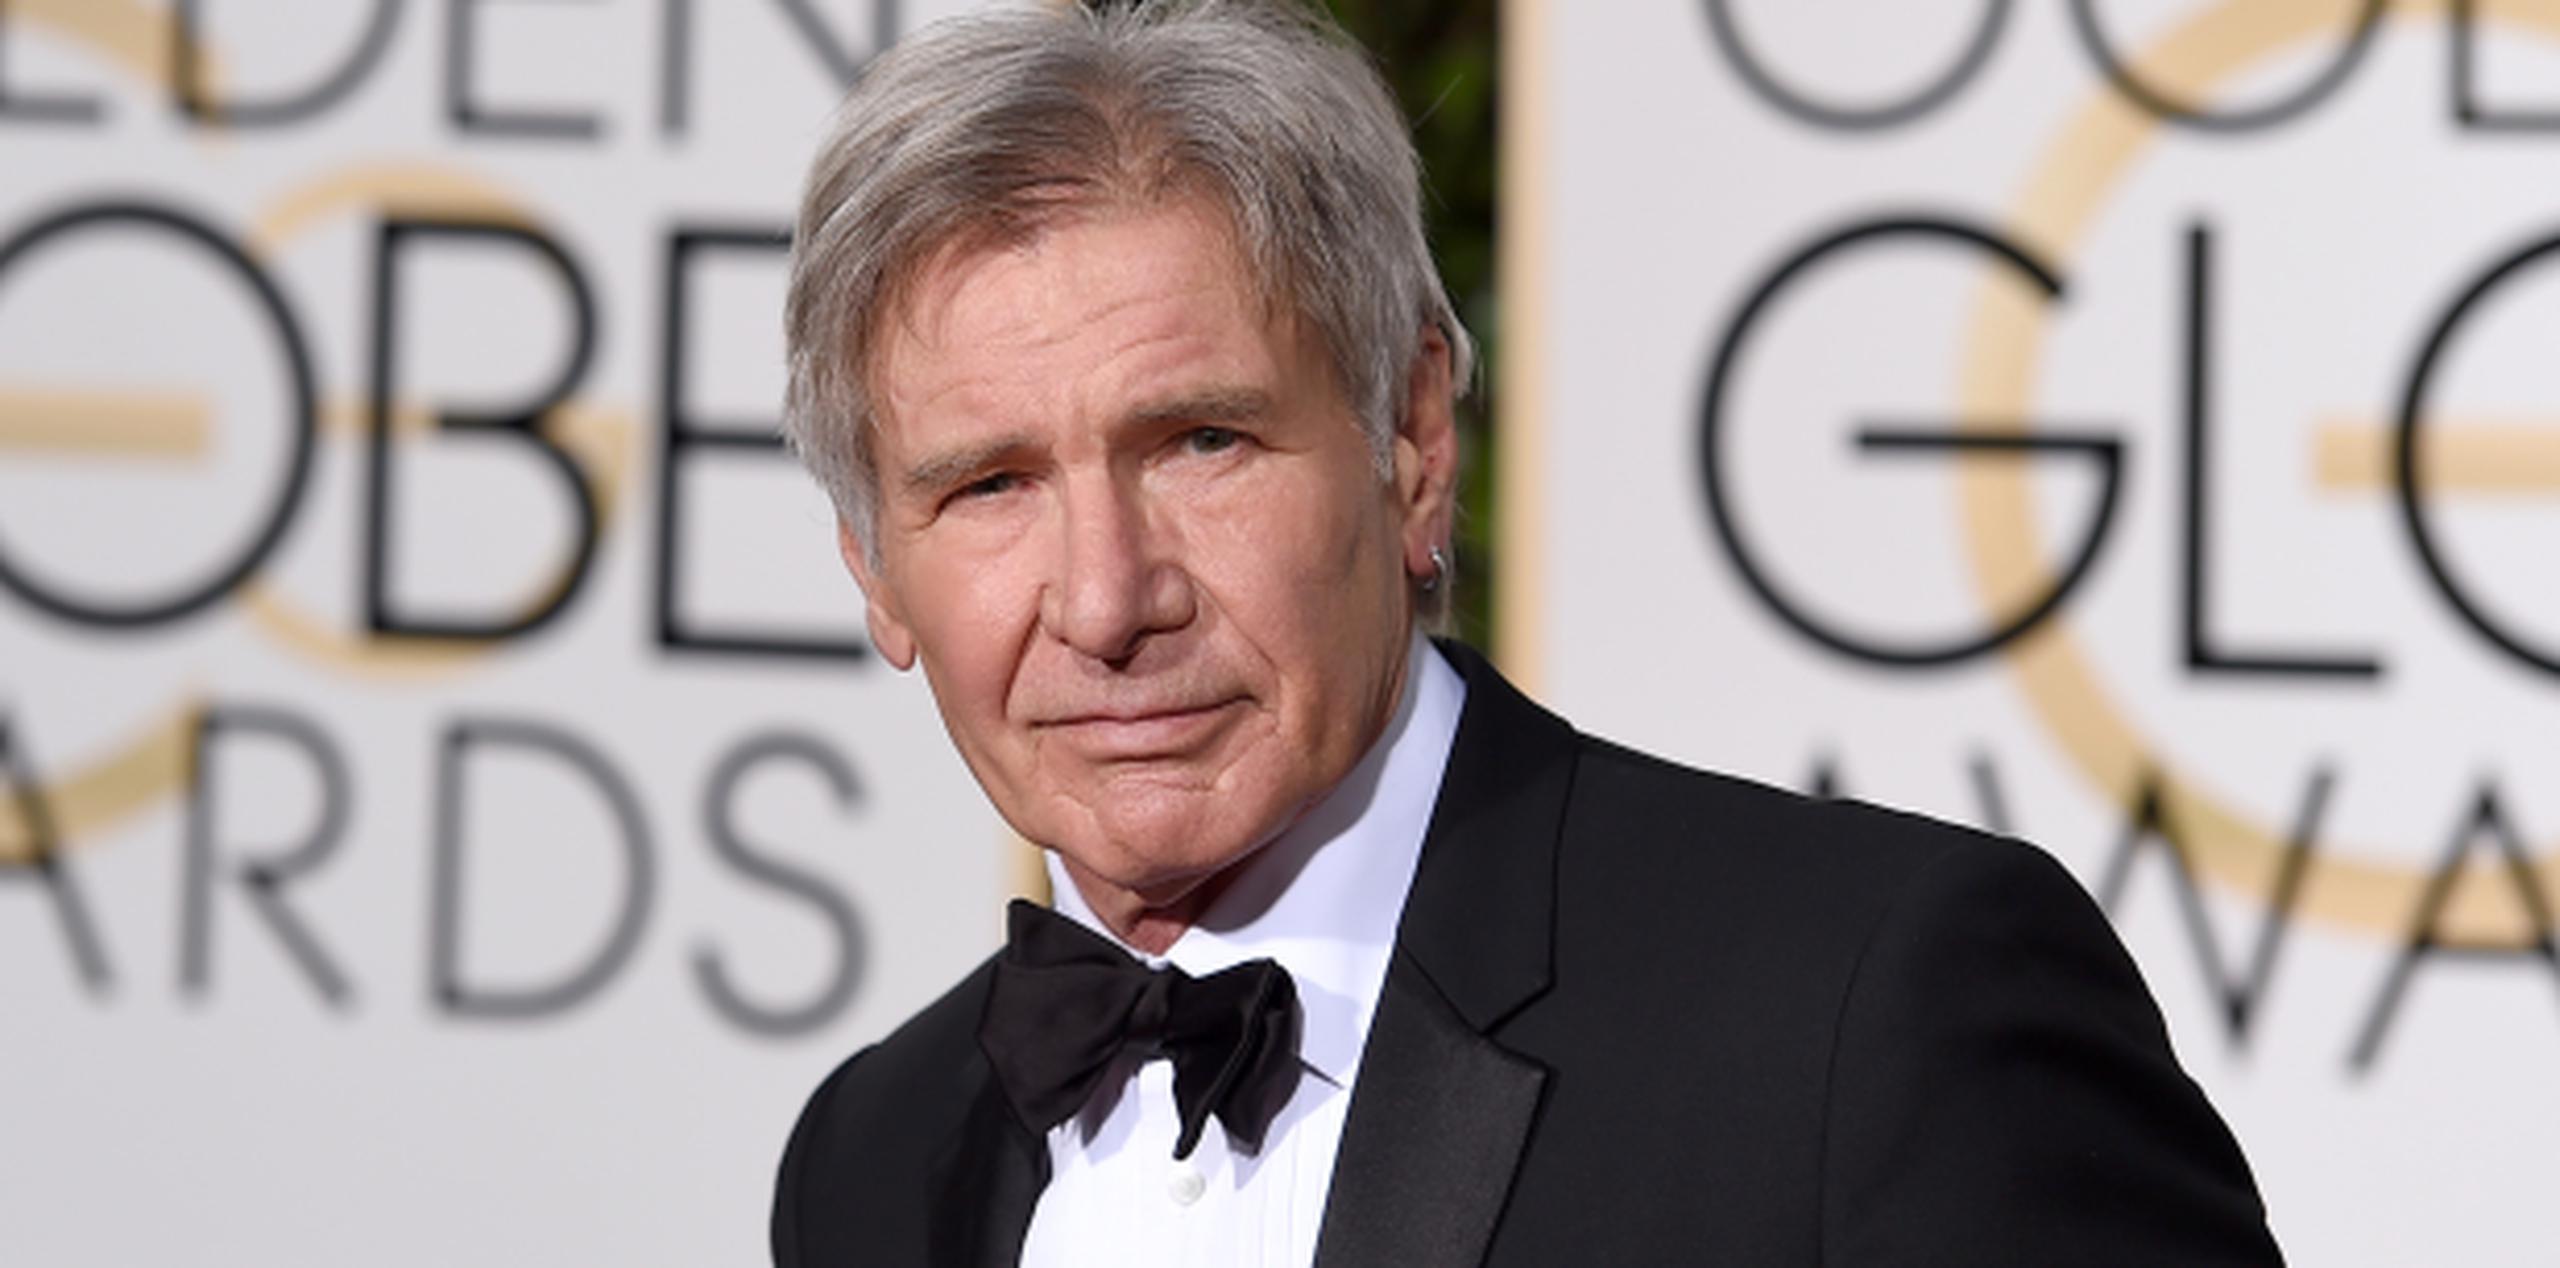 Las películas anteriores de Indiana Jones, estelarizadas por Harrison Ford, recaudaron en total unos $2,000 millones en cines. (AP)